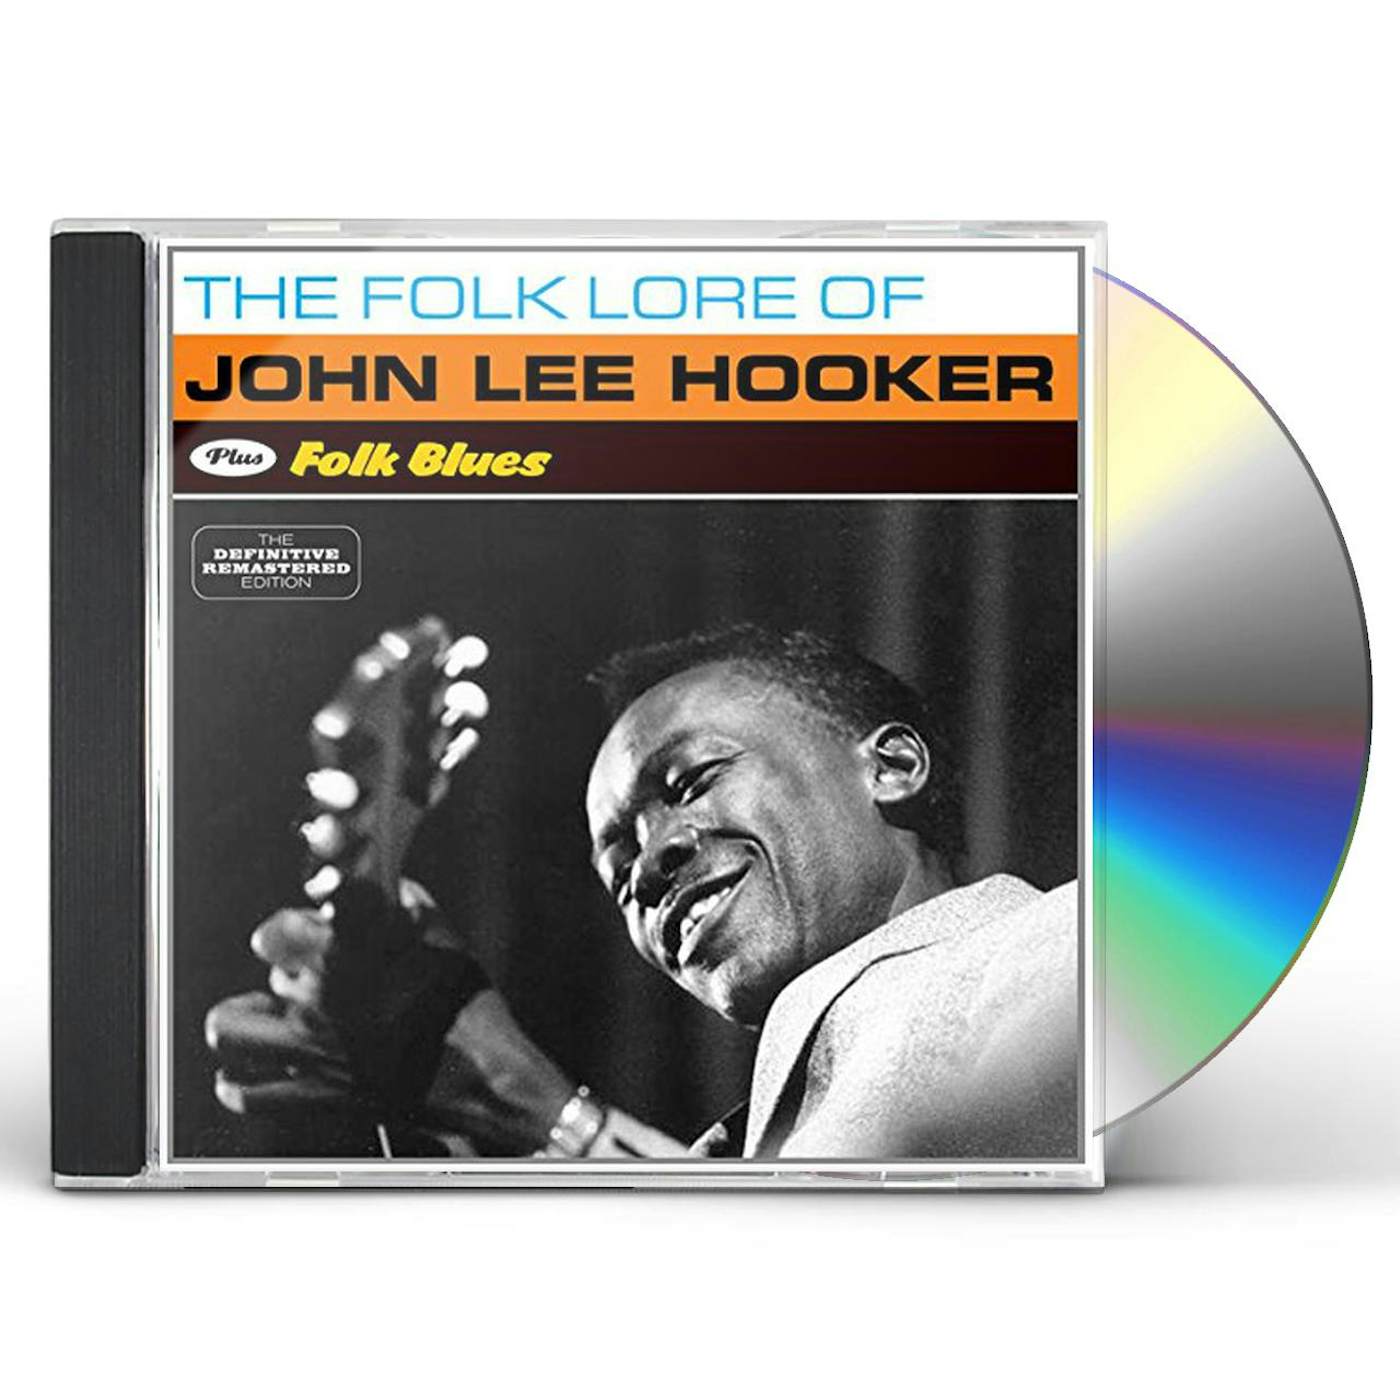 John Lee Hooker FOLK LORE OF + FOLK BLUES CD